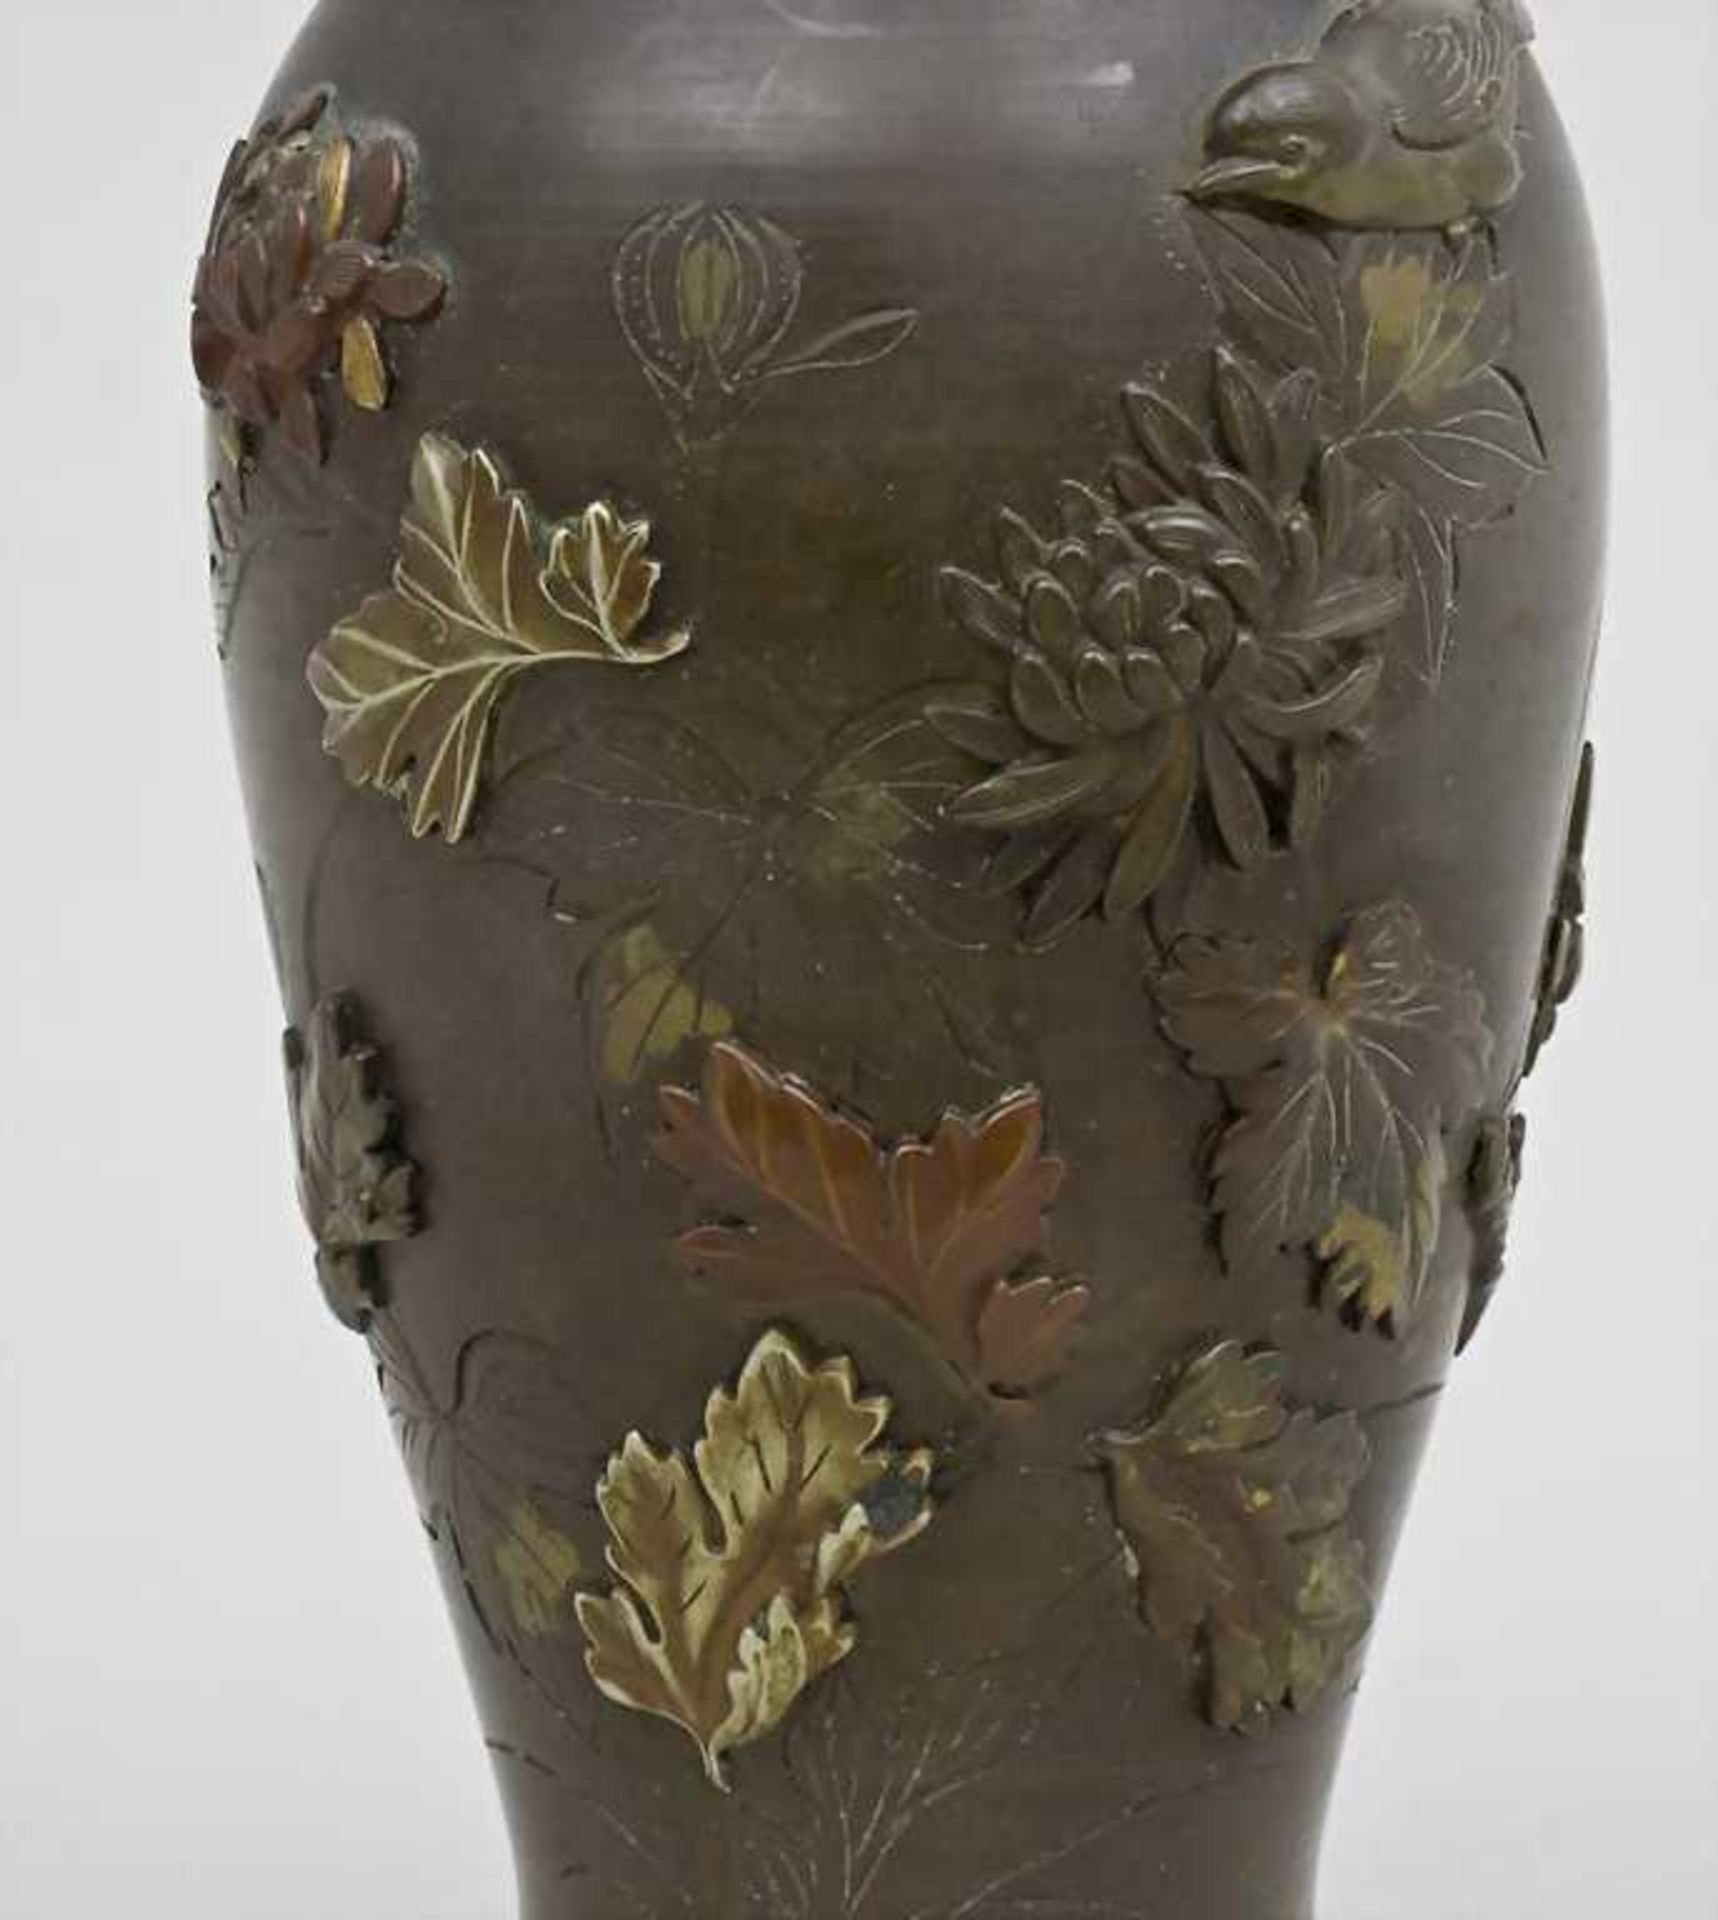 Vase, Meiji-Periode, Japan, Ende 19. Jh. konische Form mit leicht ausgestelltem Rand. Umlaufend sehr - Bild 2 aus 4